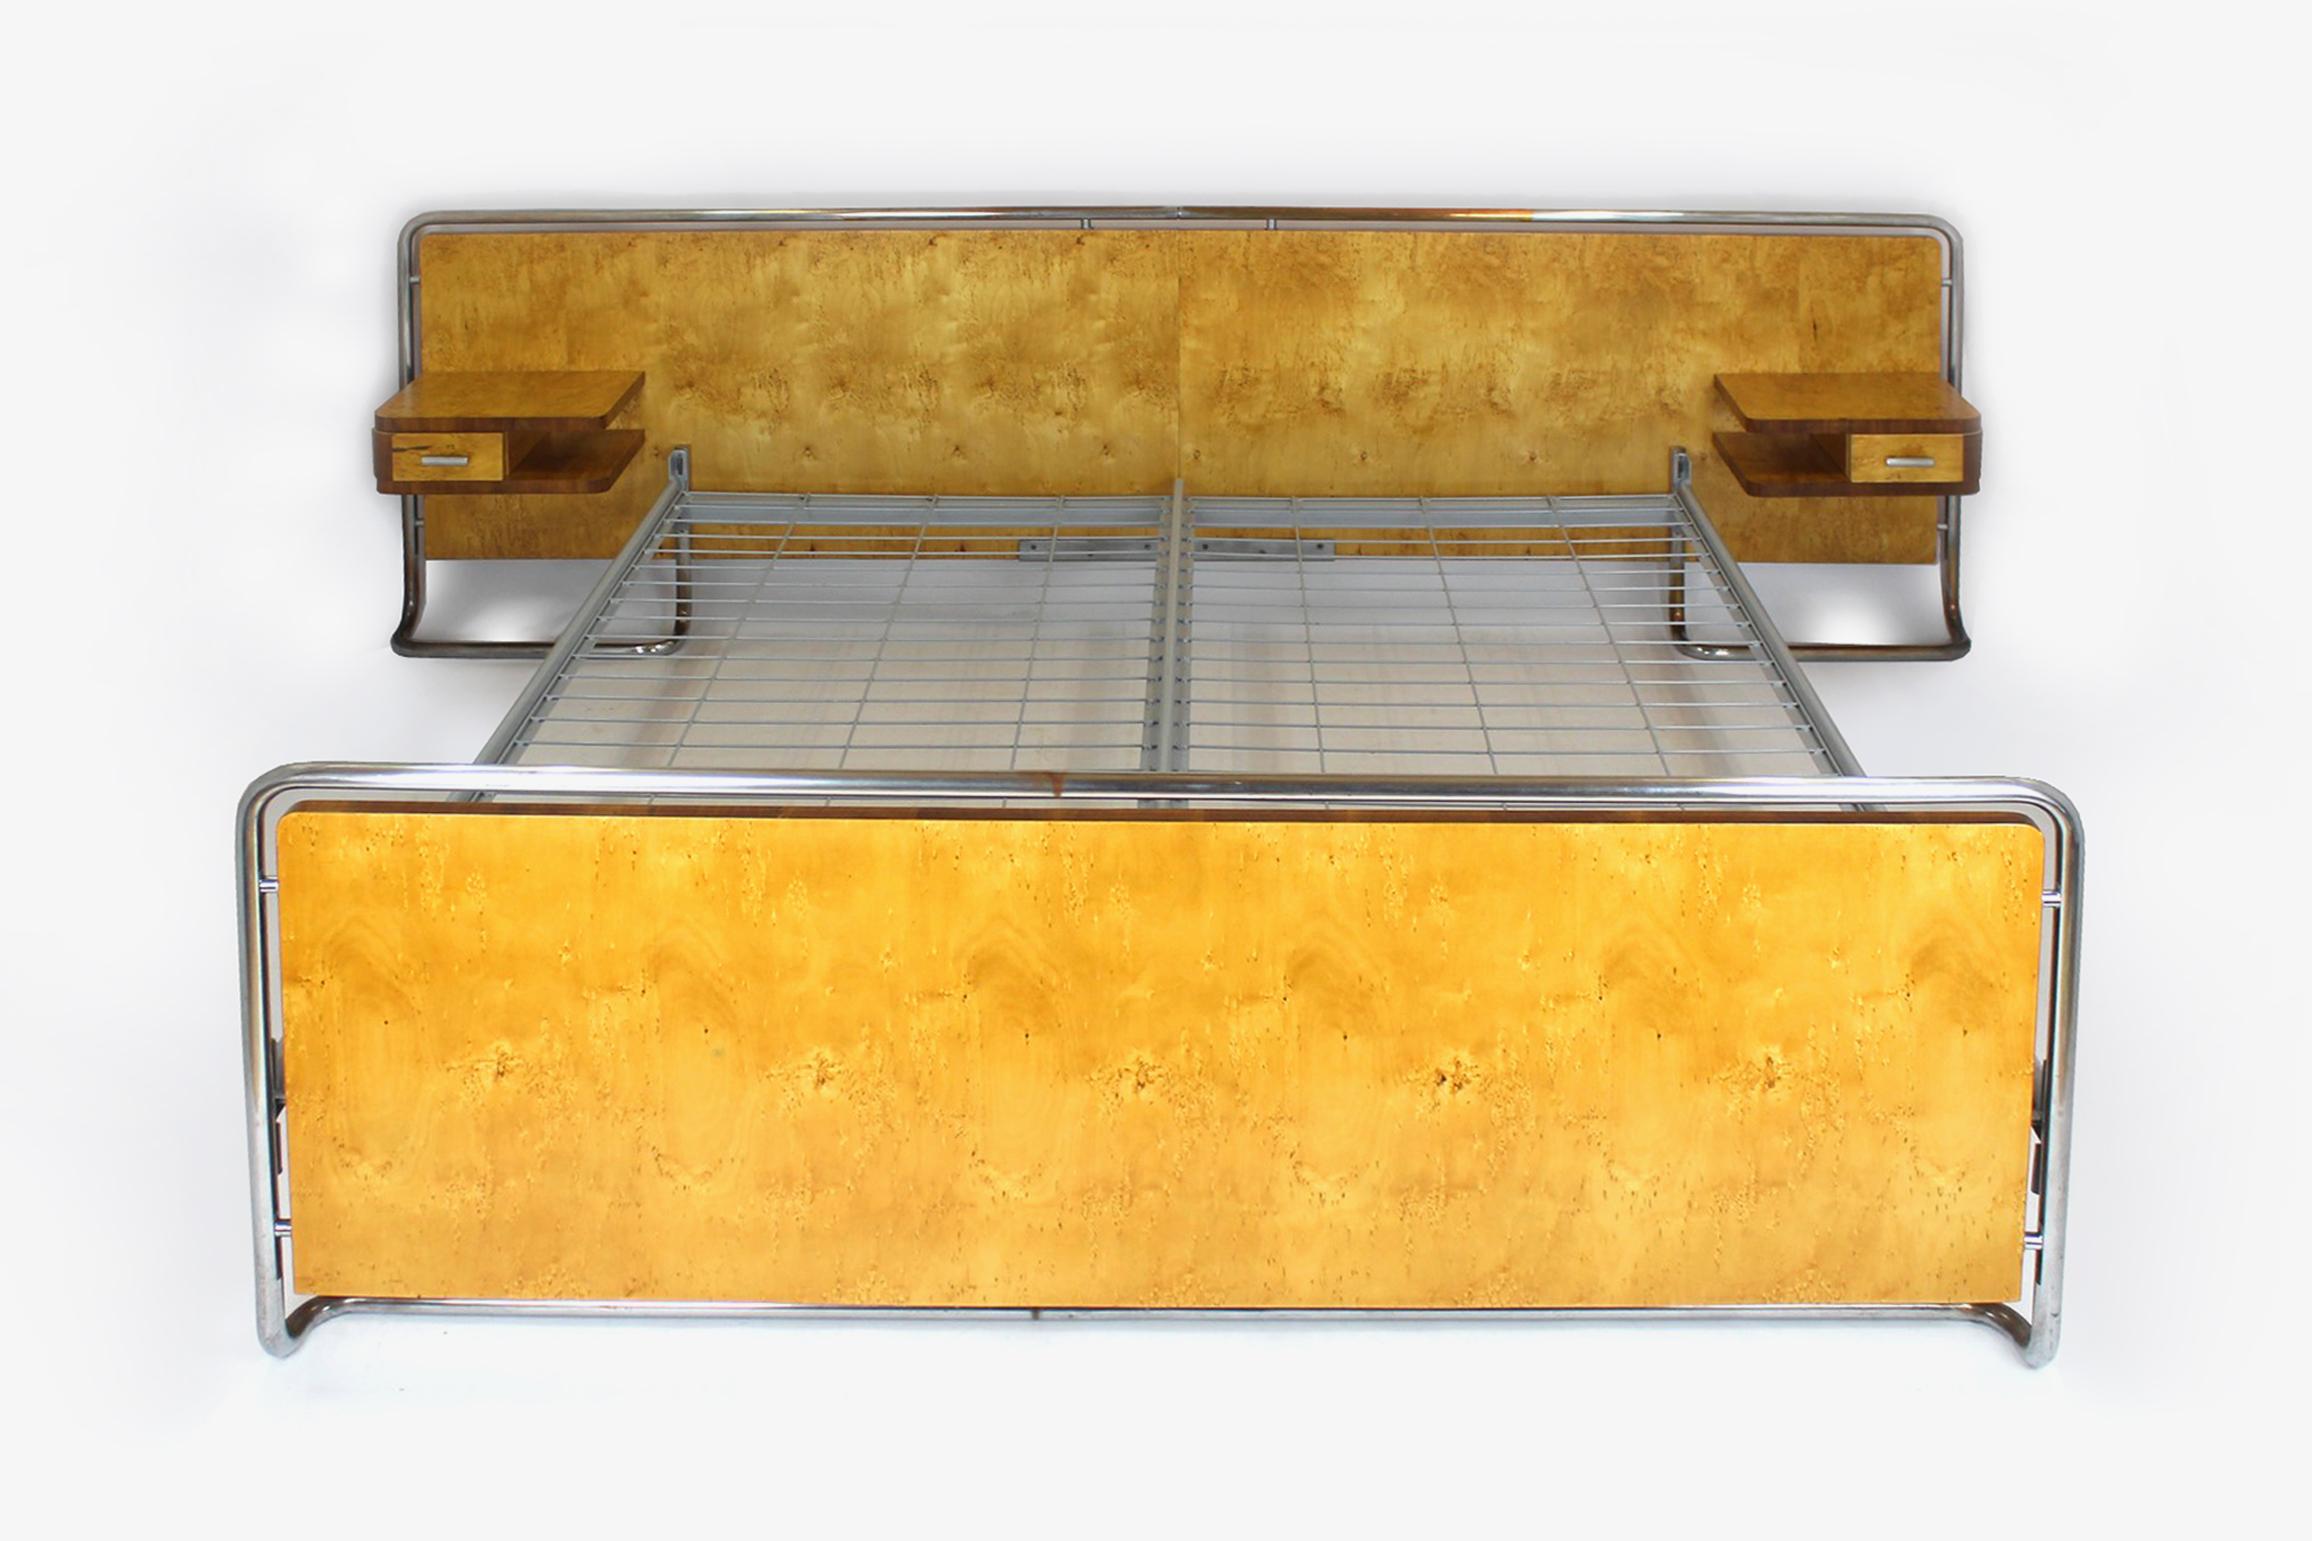 
Dieses Bett im Bauhaus-Stil wurde von Rudolf Vichr in den 1940er Jahren in der Tschechoslowakei hergestellt.
Das Set besteht aus einem Doppelbett und zwei aufgehängten Nachttischen. Die Möbel sind mit zwei Holzarten furniert, das Gestell besteht